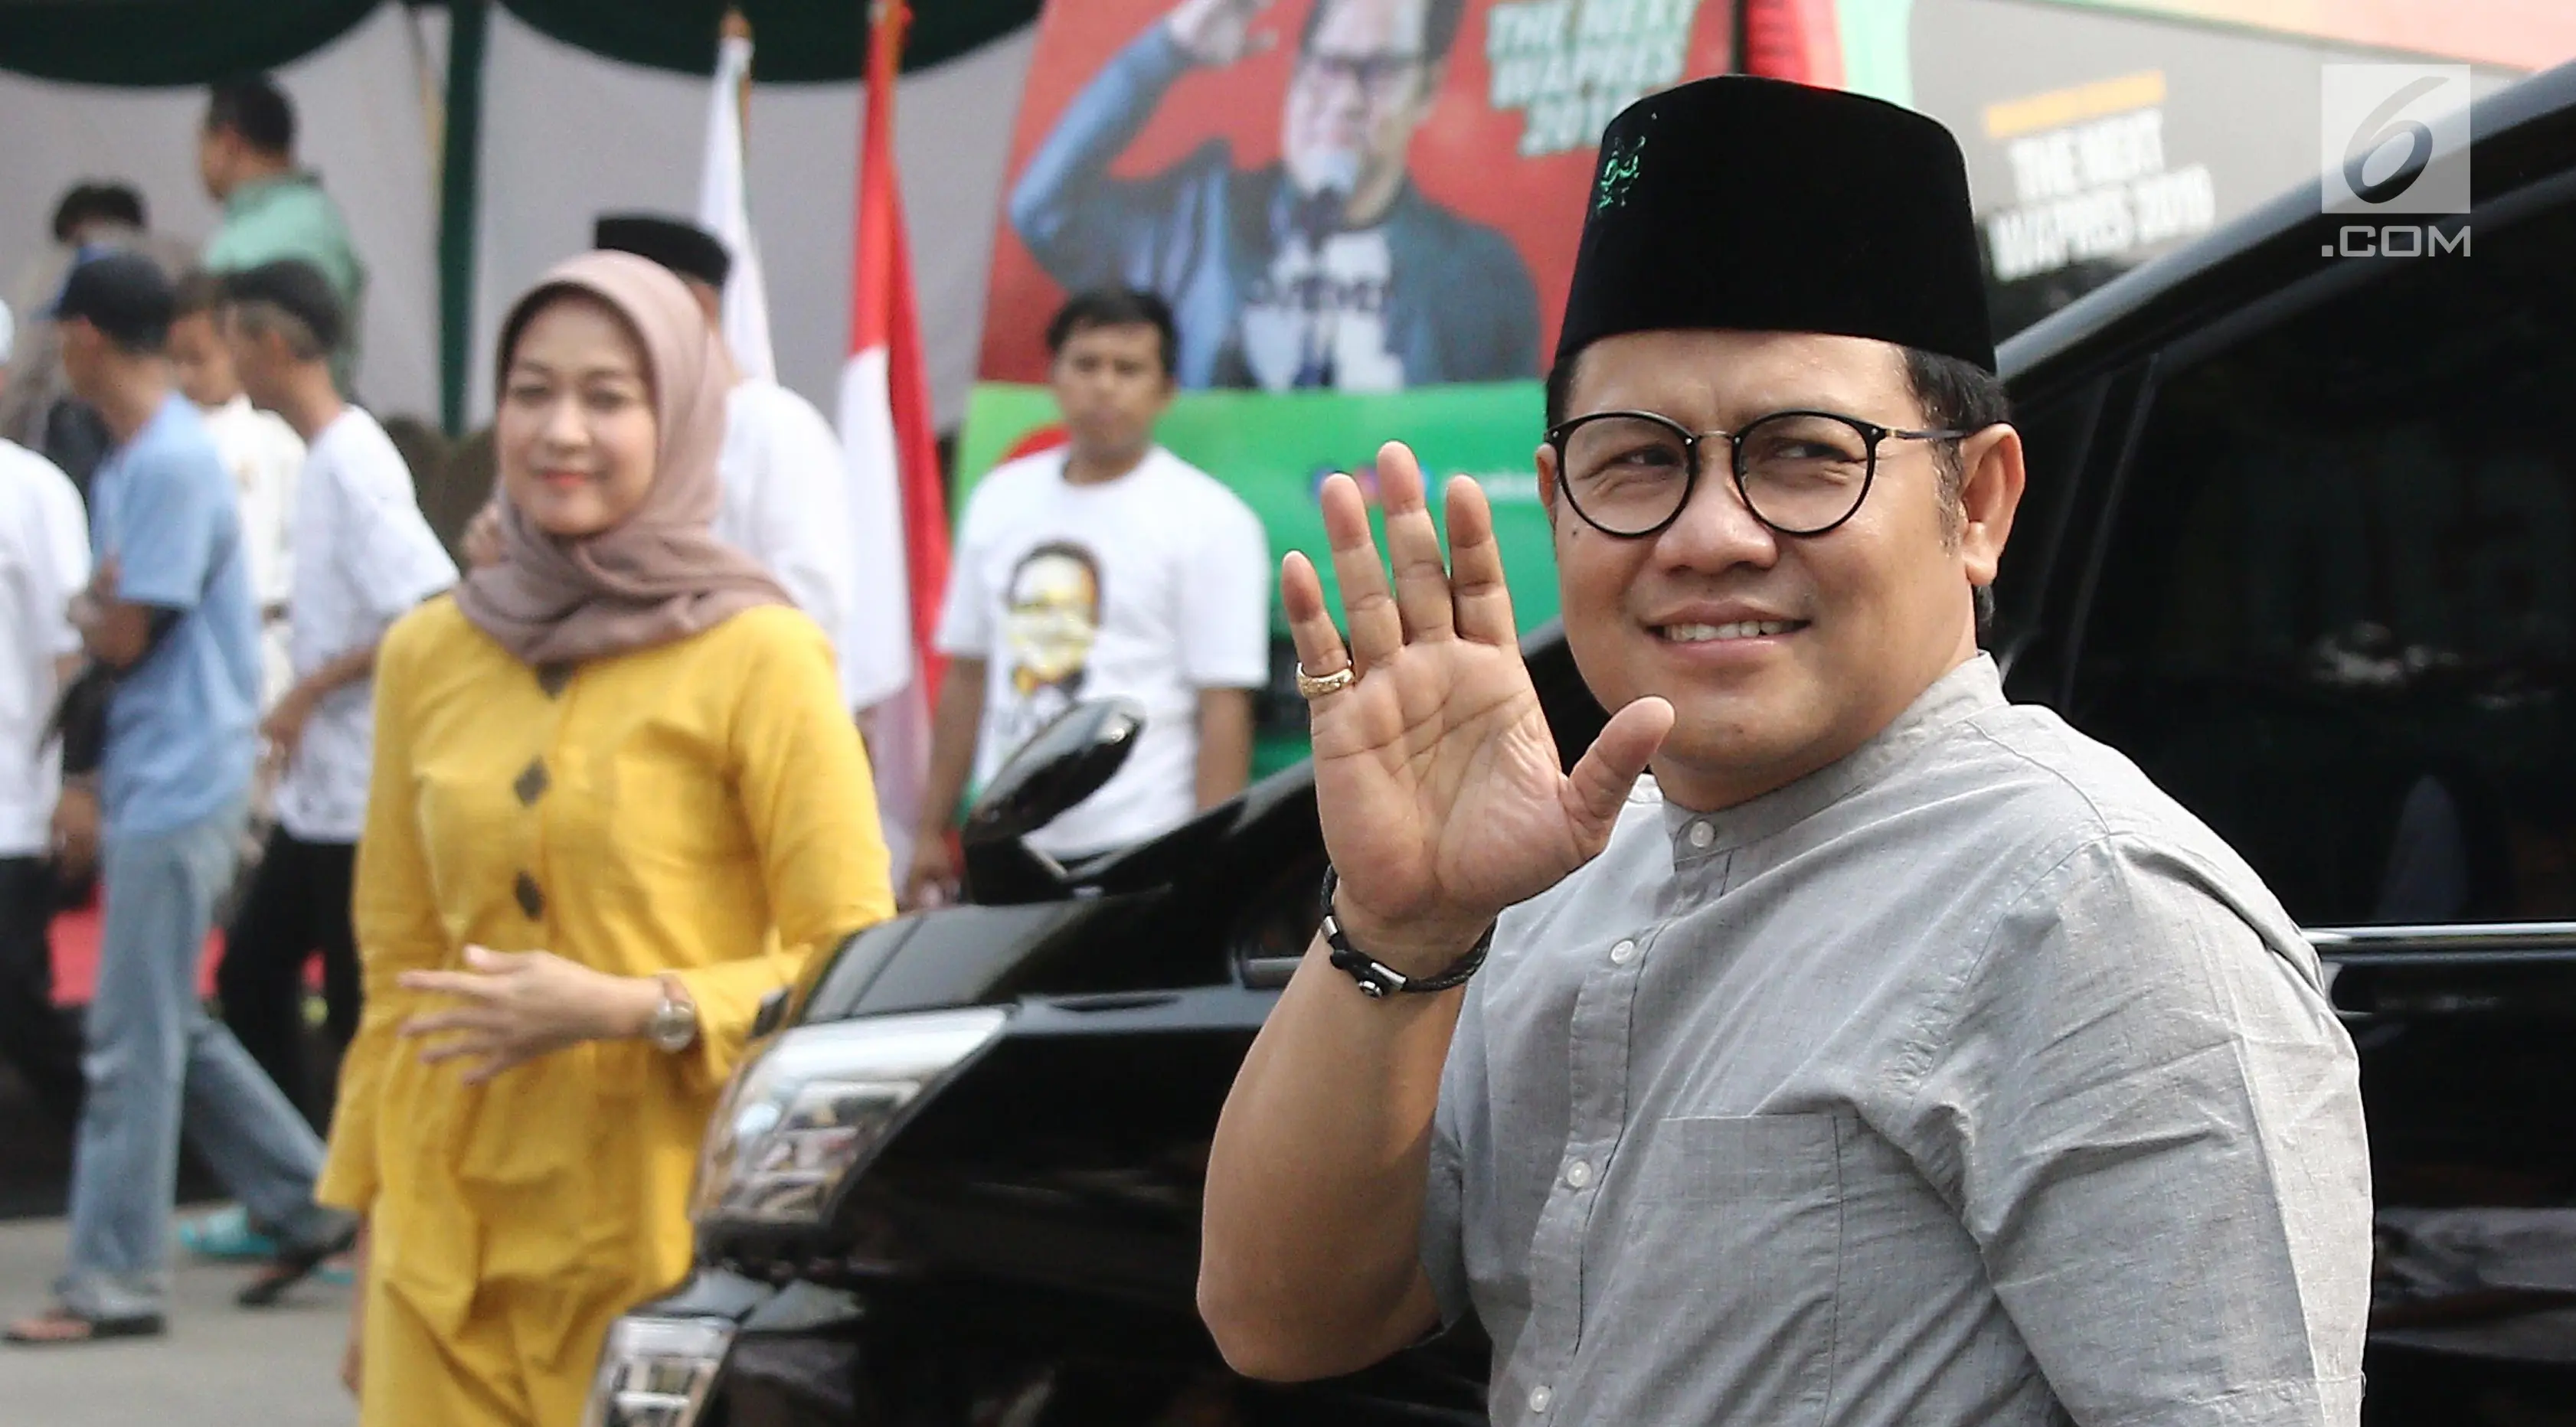 Ketua Umum PKB Muhaimin Iskandar bersiap melepas peserta mudik gratis PKB di kawasan Cikini, Jakarta, Minggu (10/6). PKB menggelar mudik bersama dengan nama 